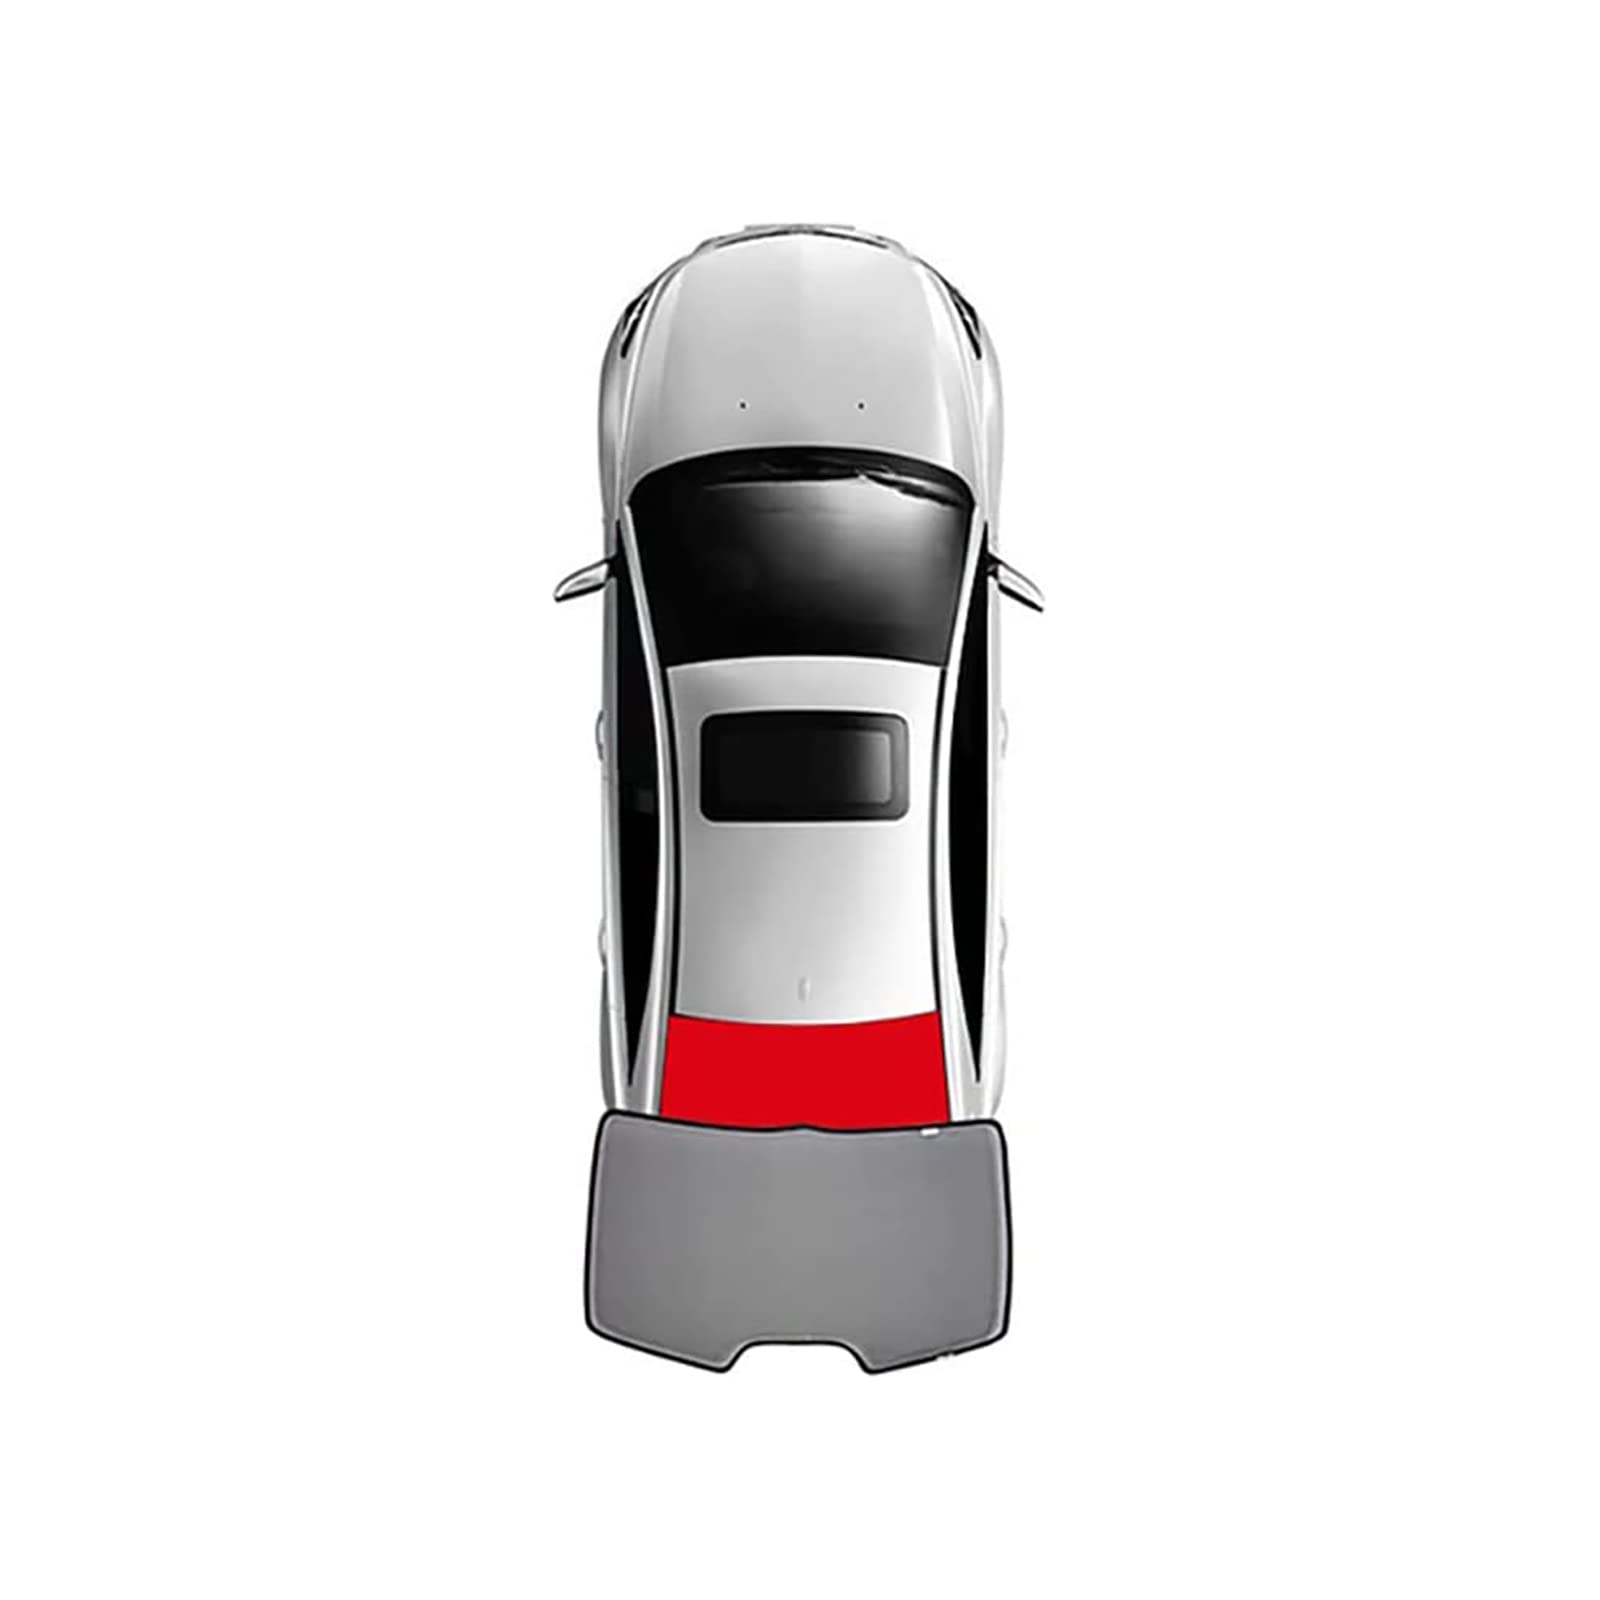 Auto Seitenfenster Sonnenschutz für BMW 3 Series E46 1999-2004, Vordere und Hintere Seitenfenster Atmungsaktives UV Schutz Privacy Protection Sonnenschutz Accessories,1pcs Rear von MSTMAZZ